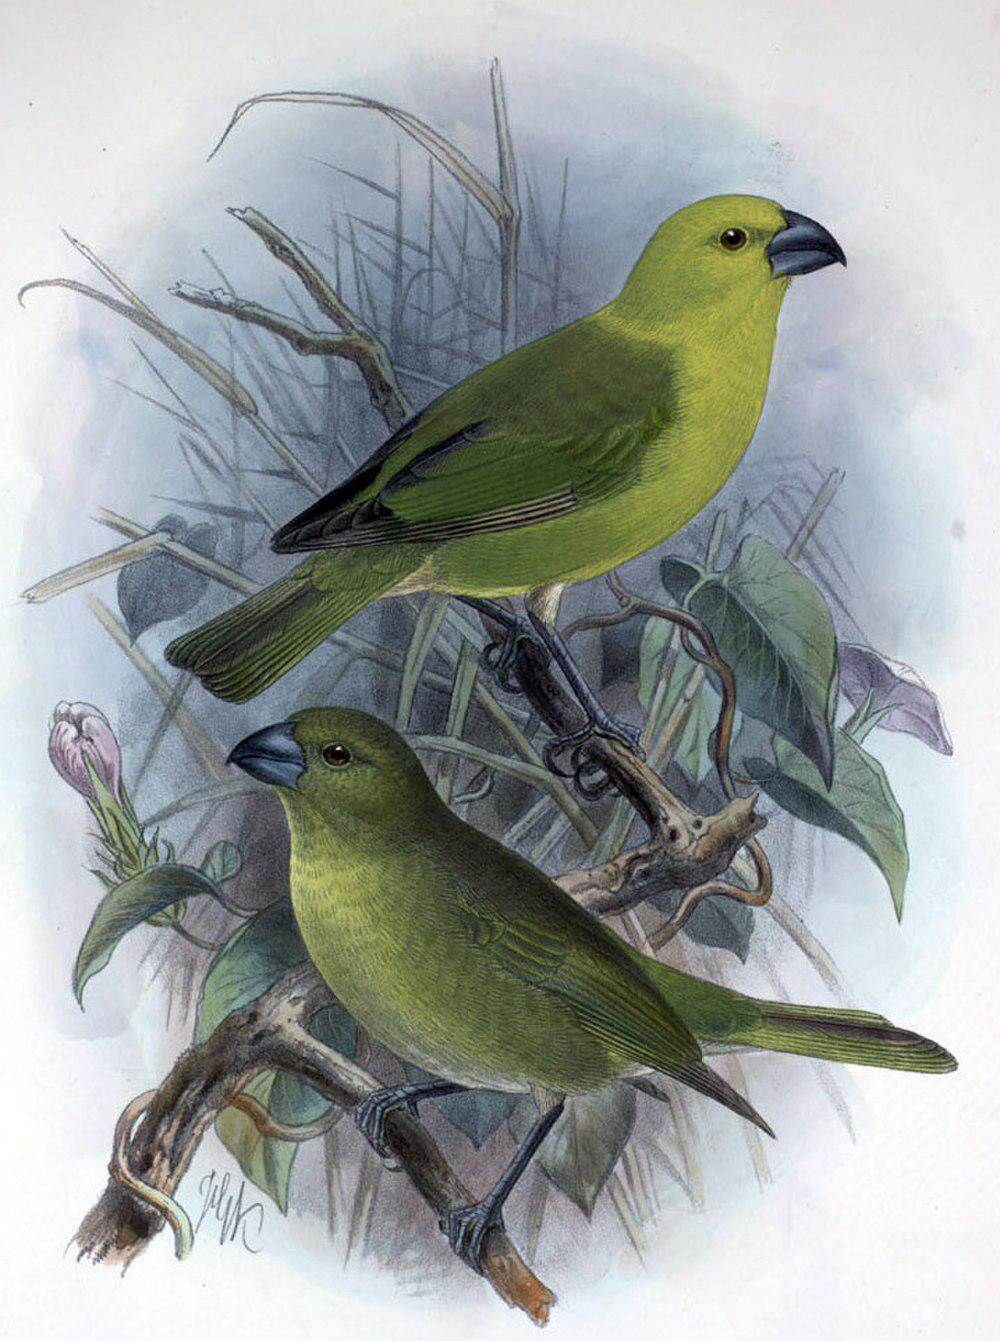 黄头拟管舌鸟 / Lesser Koa Finch / Rhodacanthis flaviceps